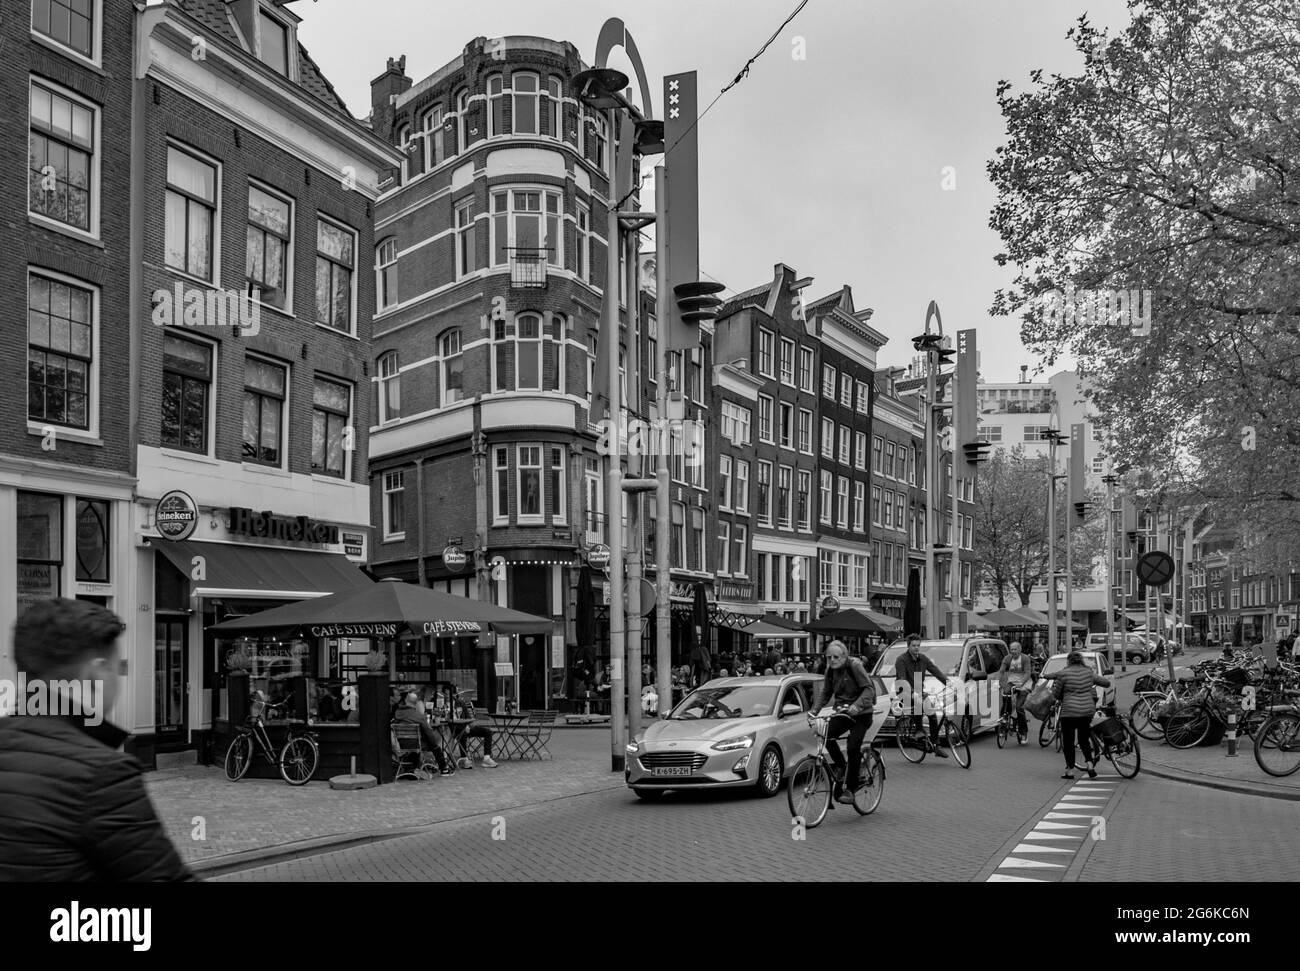 AMSTERDAM, NIEDERLANDE. 06. JUNI 2021. Schöne Fassaden der alten holländischen Gebäude. Restaurants auf der Straße. Schwarzweiß-Fotografie. Stockfoto